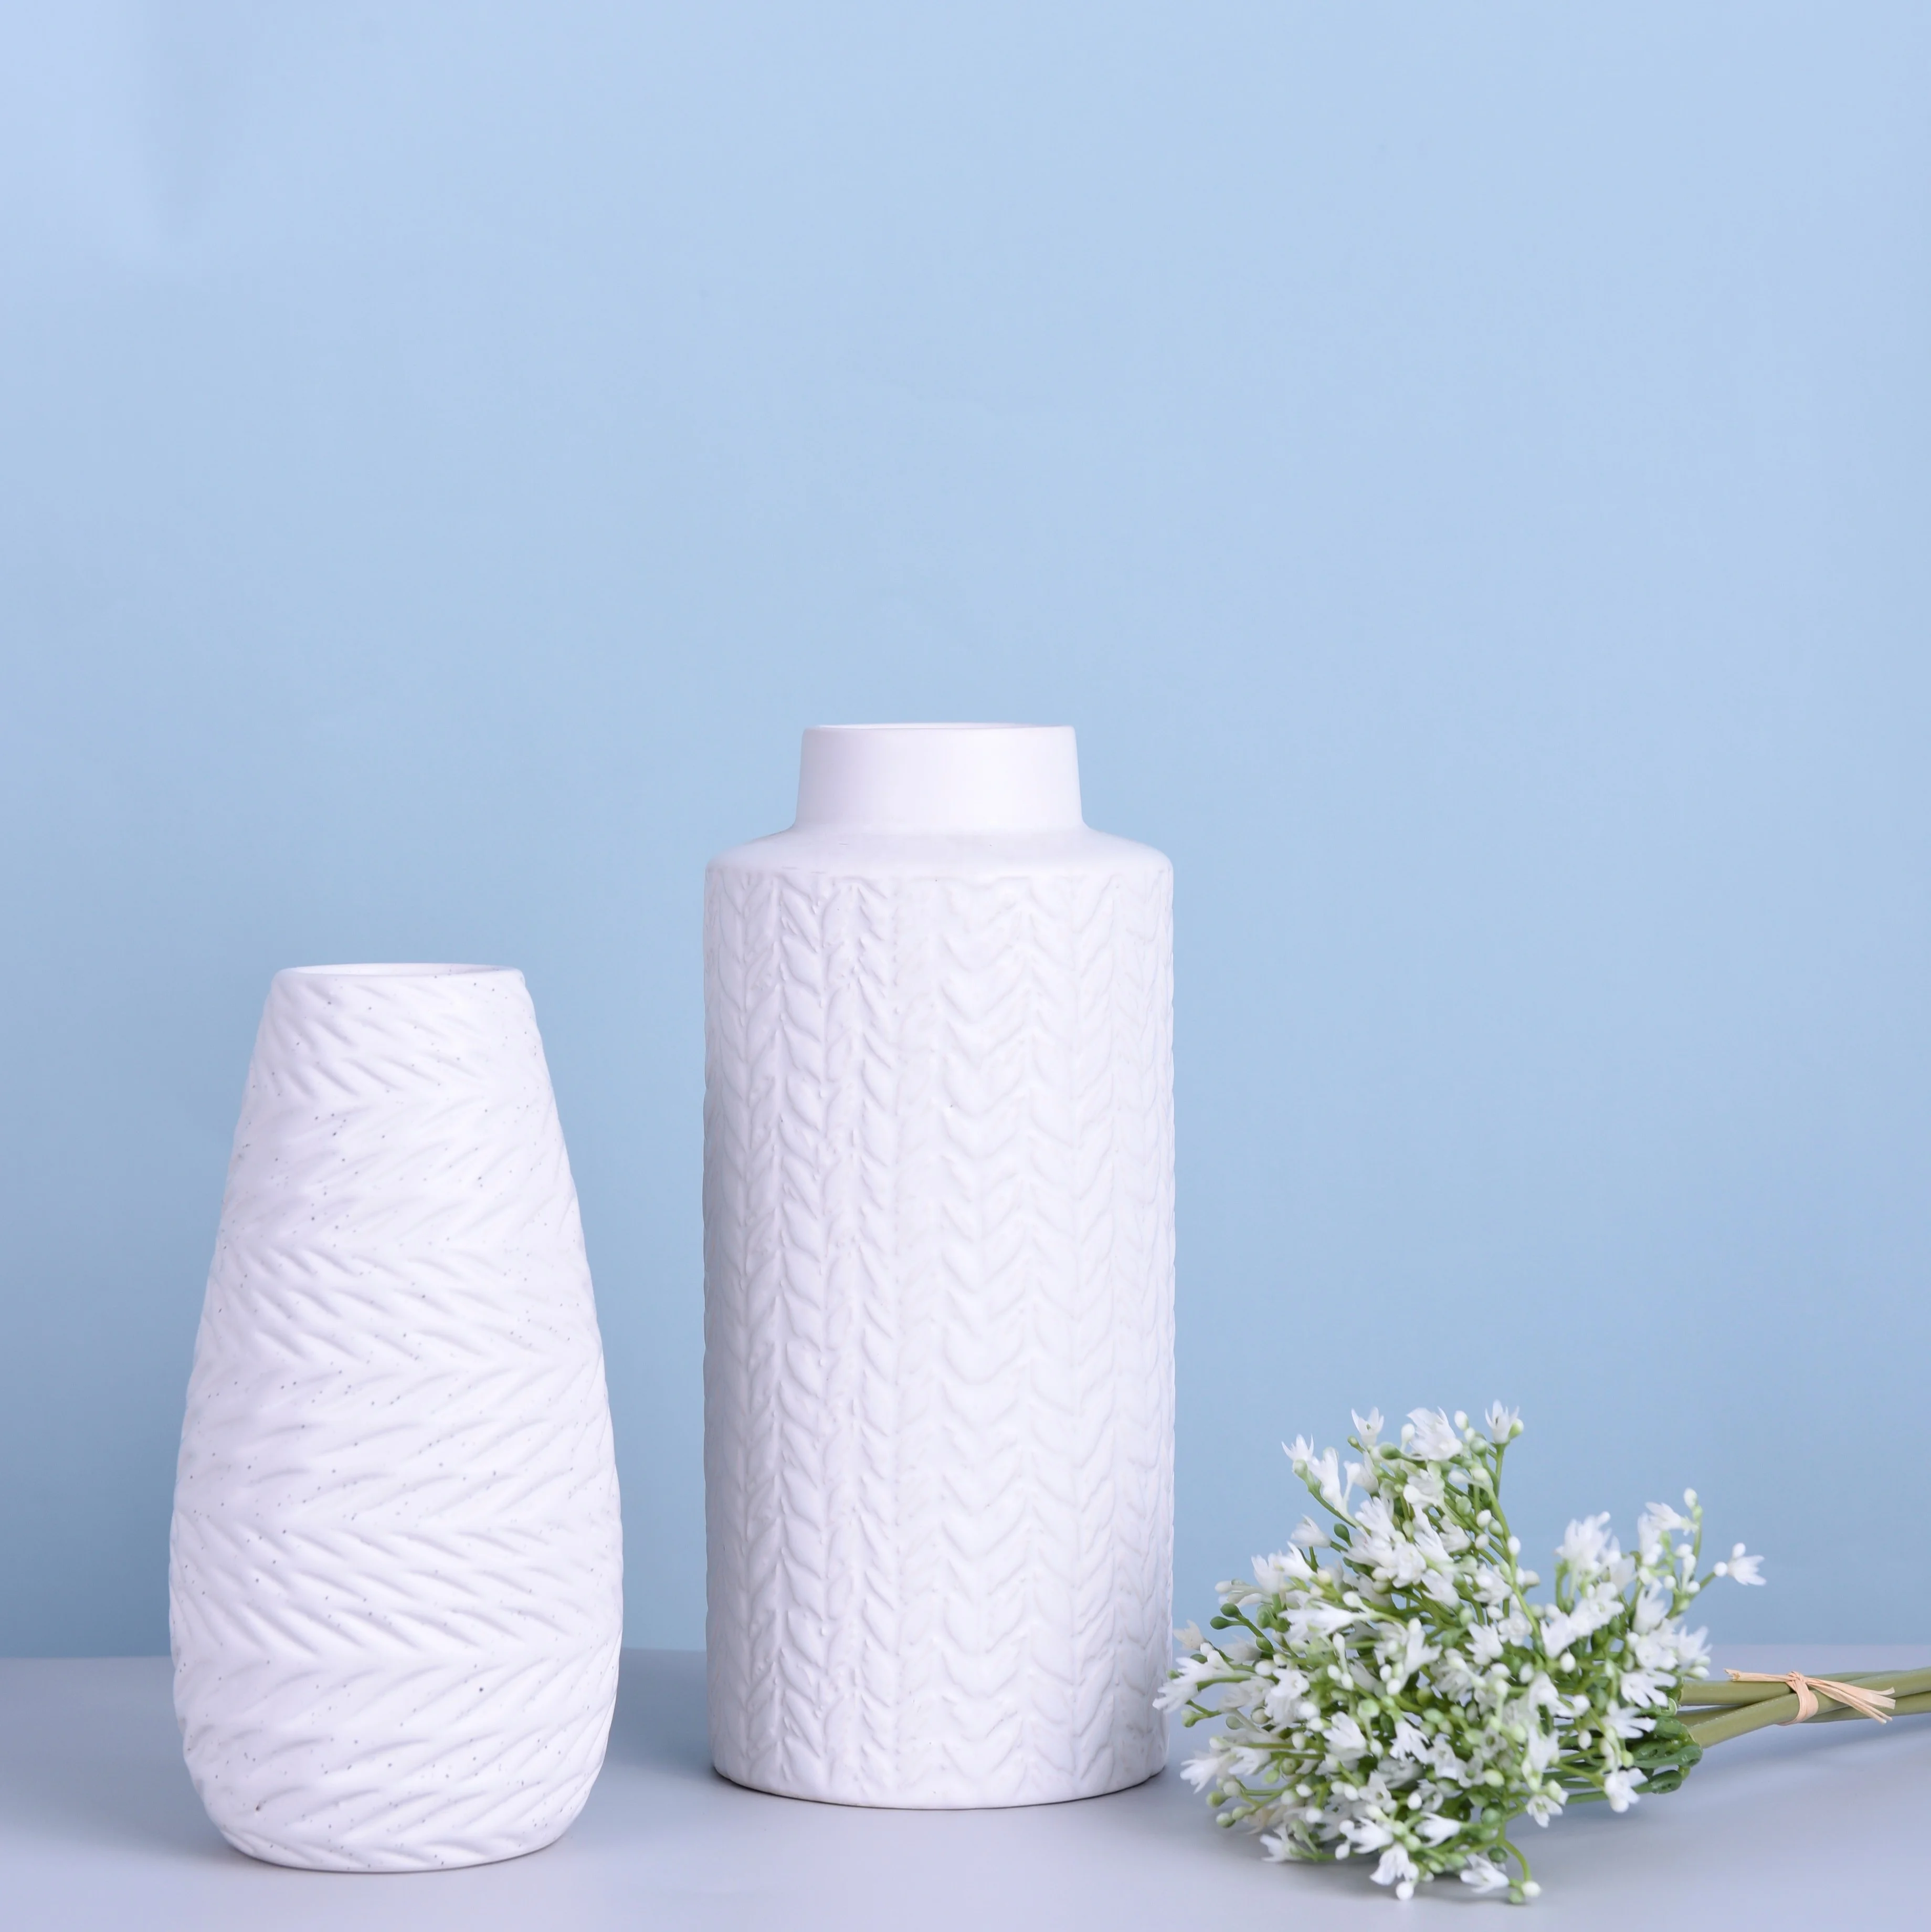 Nordic Tall Table White Ceramic & Porcelain Flower Vases  For Home Room Decor Modern